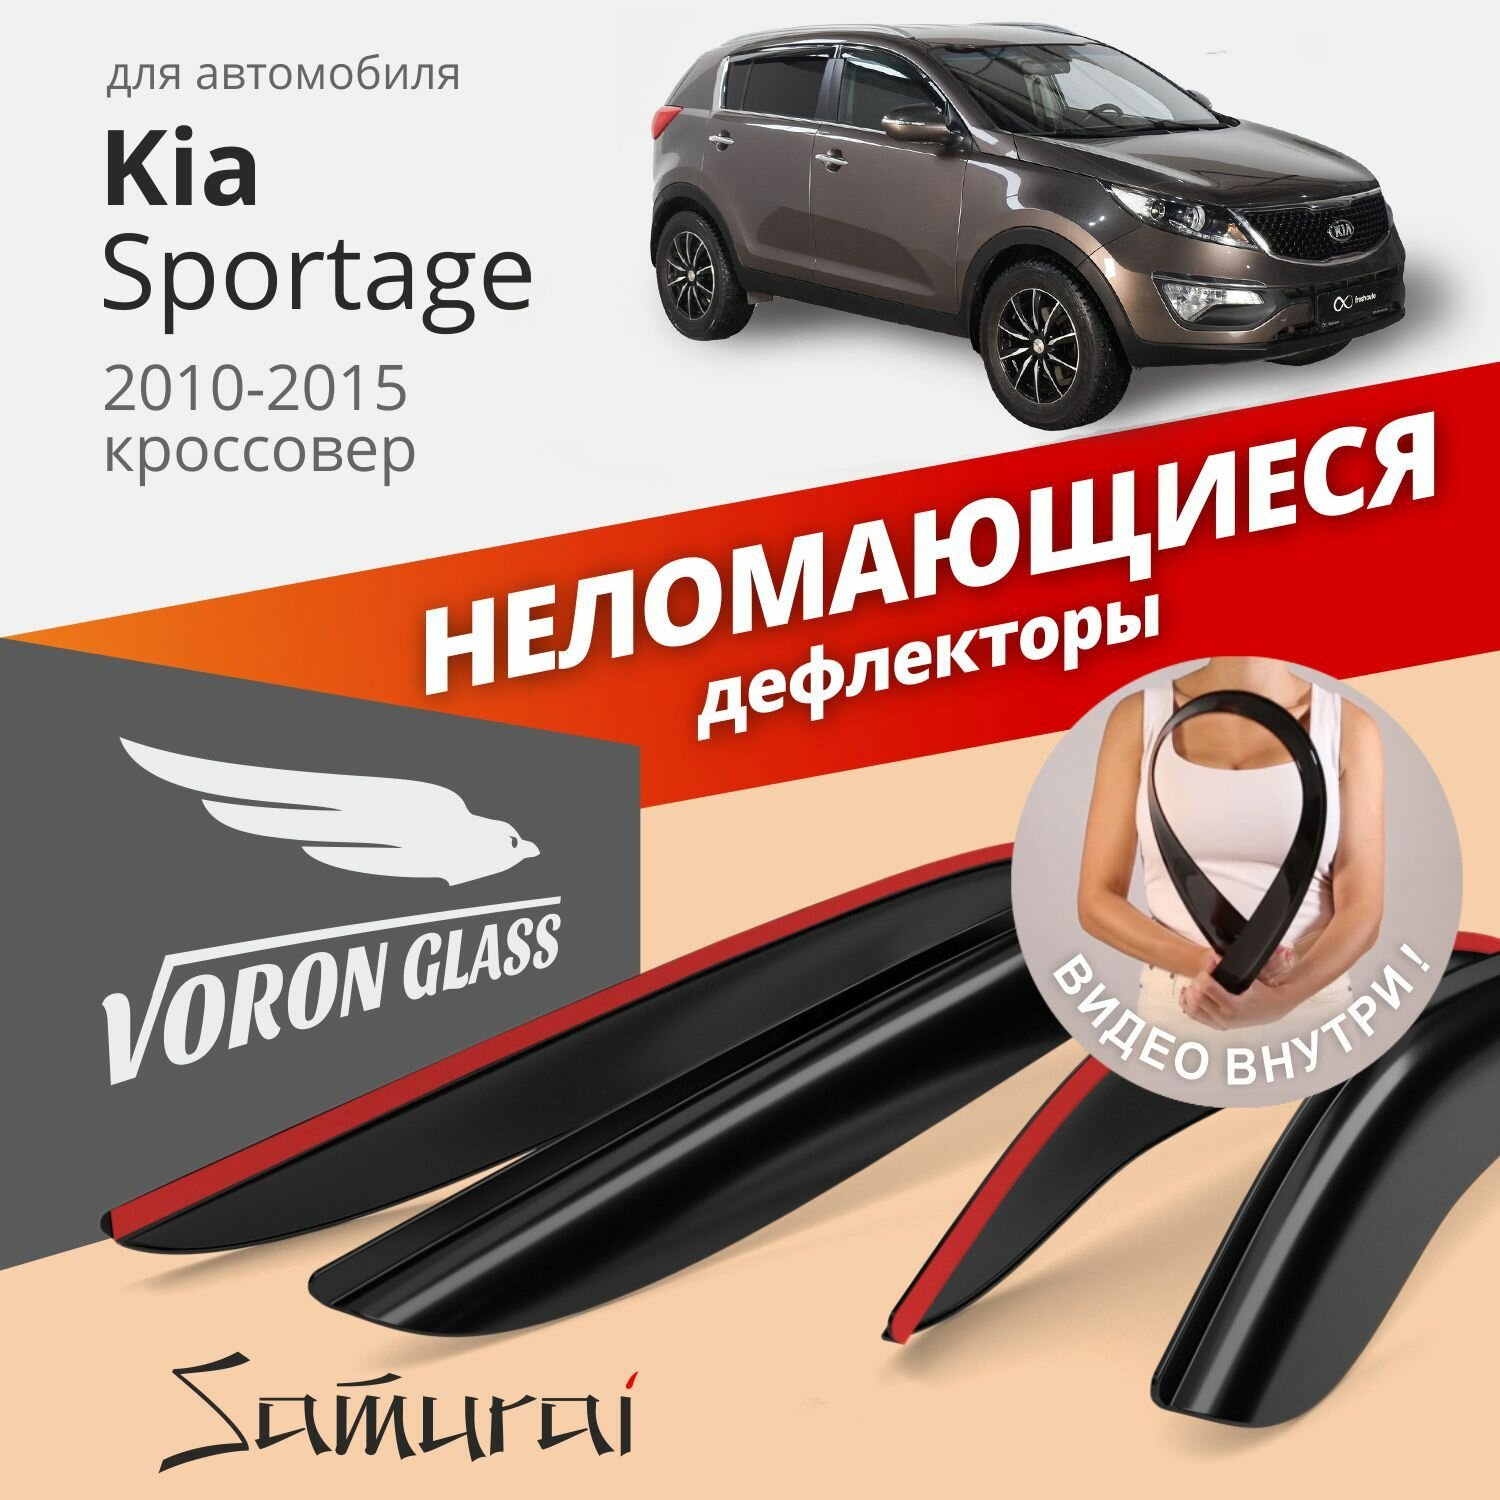 Дефлекторы окон неломающиеся Voron Glass серия Samurai для Kia Sportage III 2010-2015 накладные 4 шт.